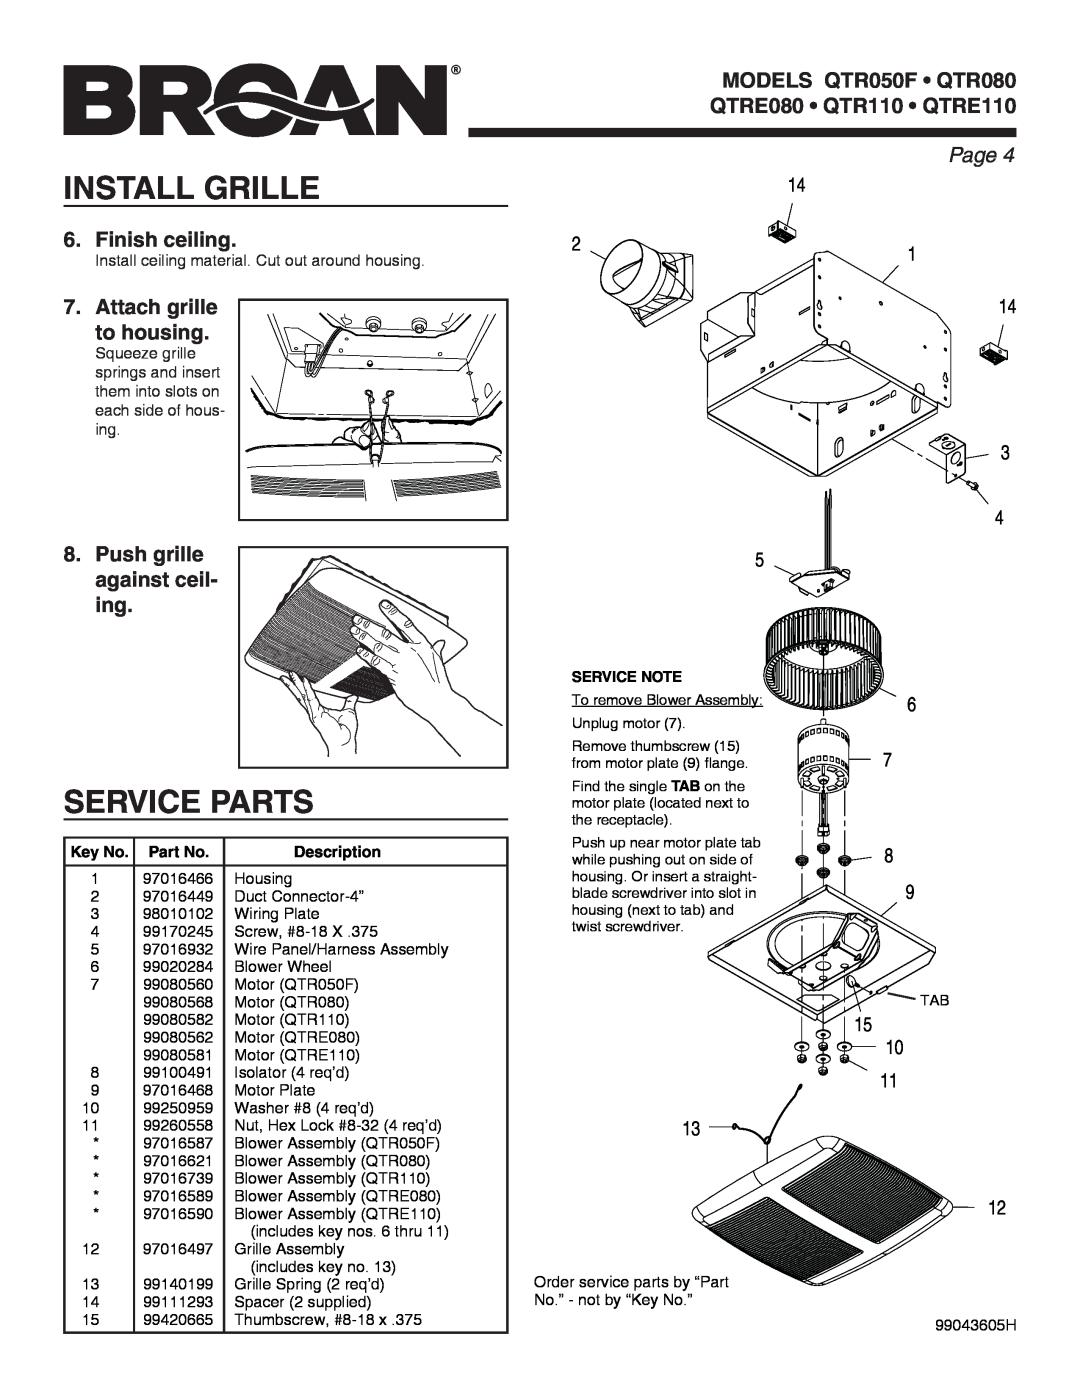 Broan QTR050F, QTRE110, QTRE080, QTR110, QTR080 manual Install Grille, Service Parts, Page , Description 